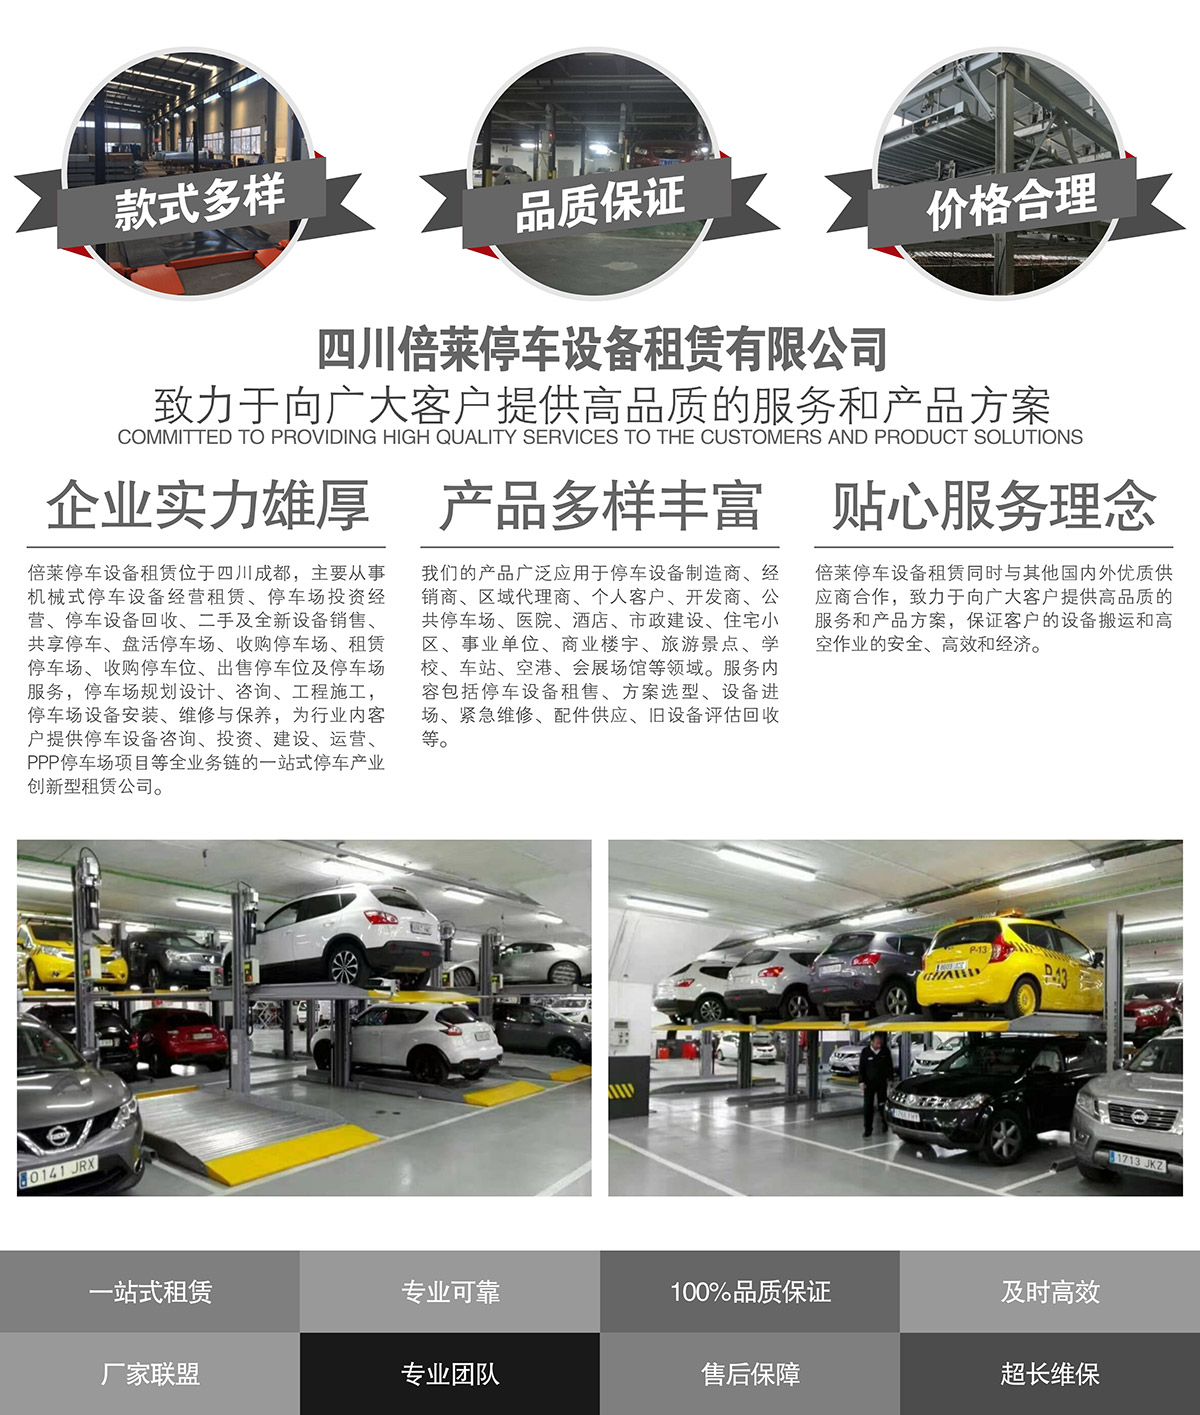 机械式车库致力于提供高品质的服务和产品方案.jpg